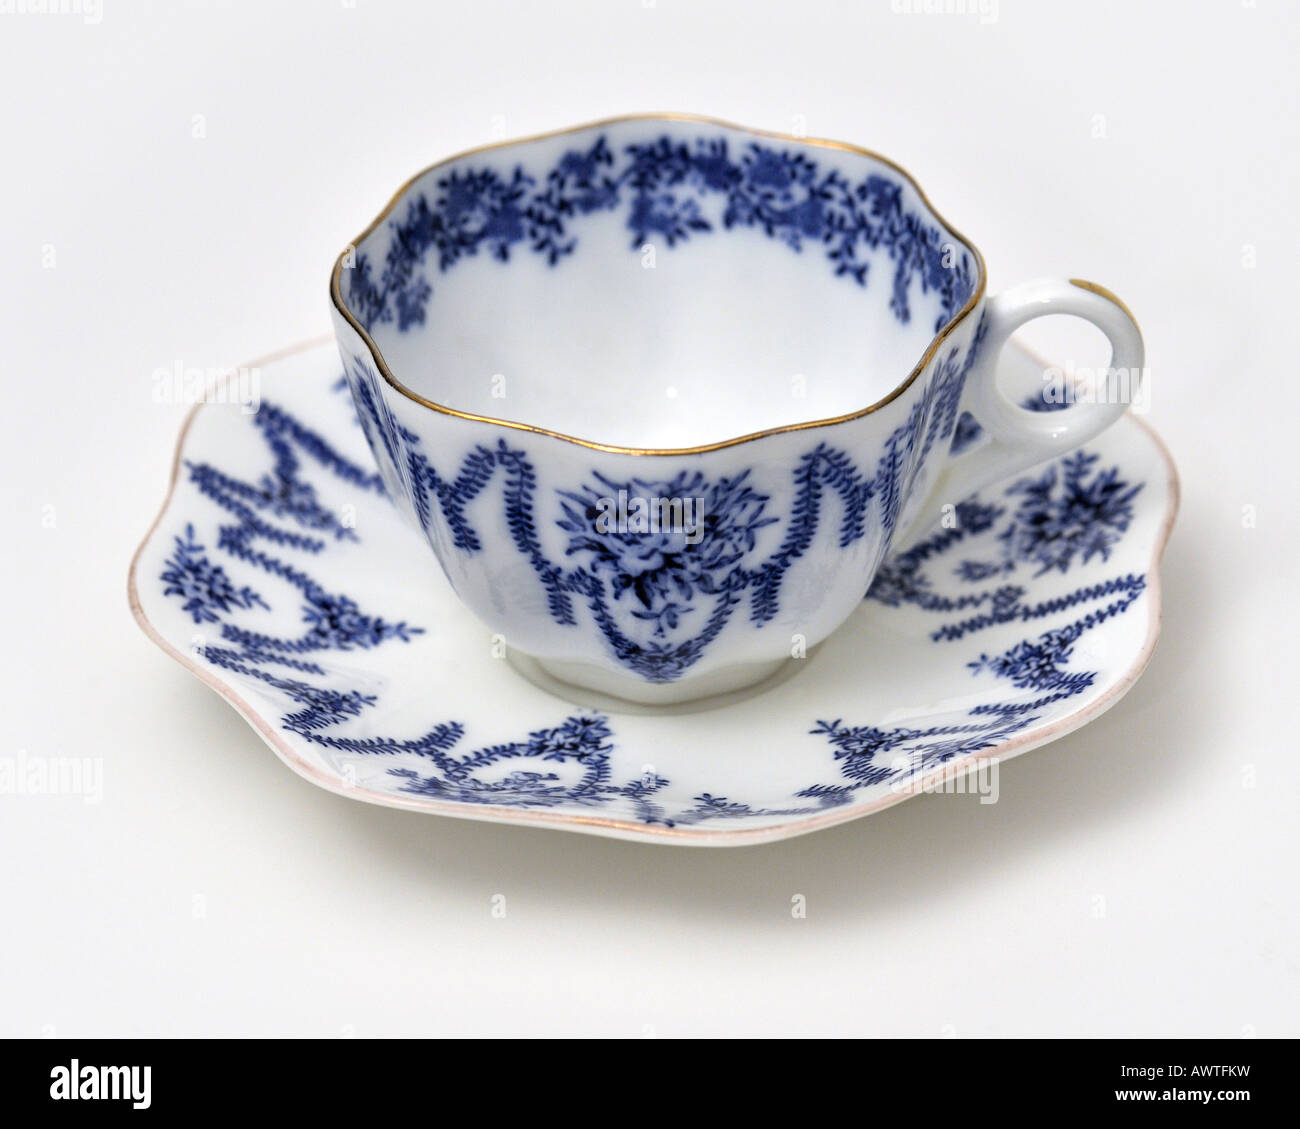 Feine englische Bone China Porzellan englische Keramik Kaffee Tee Tasse Untertasse von Coalport von Stoke nur zur redaktionellen Nutzung Stockfoto